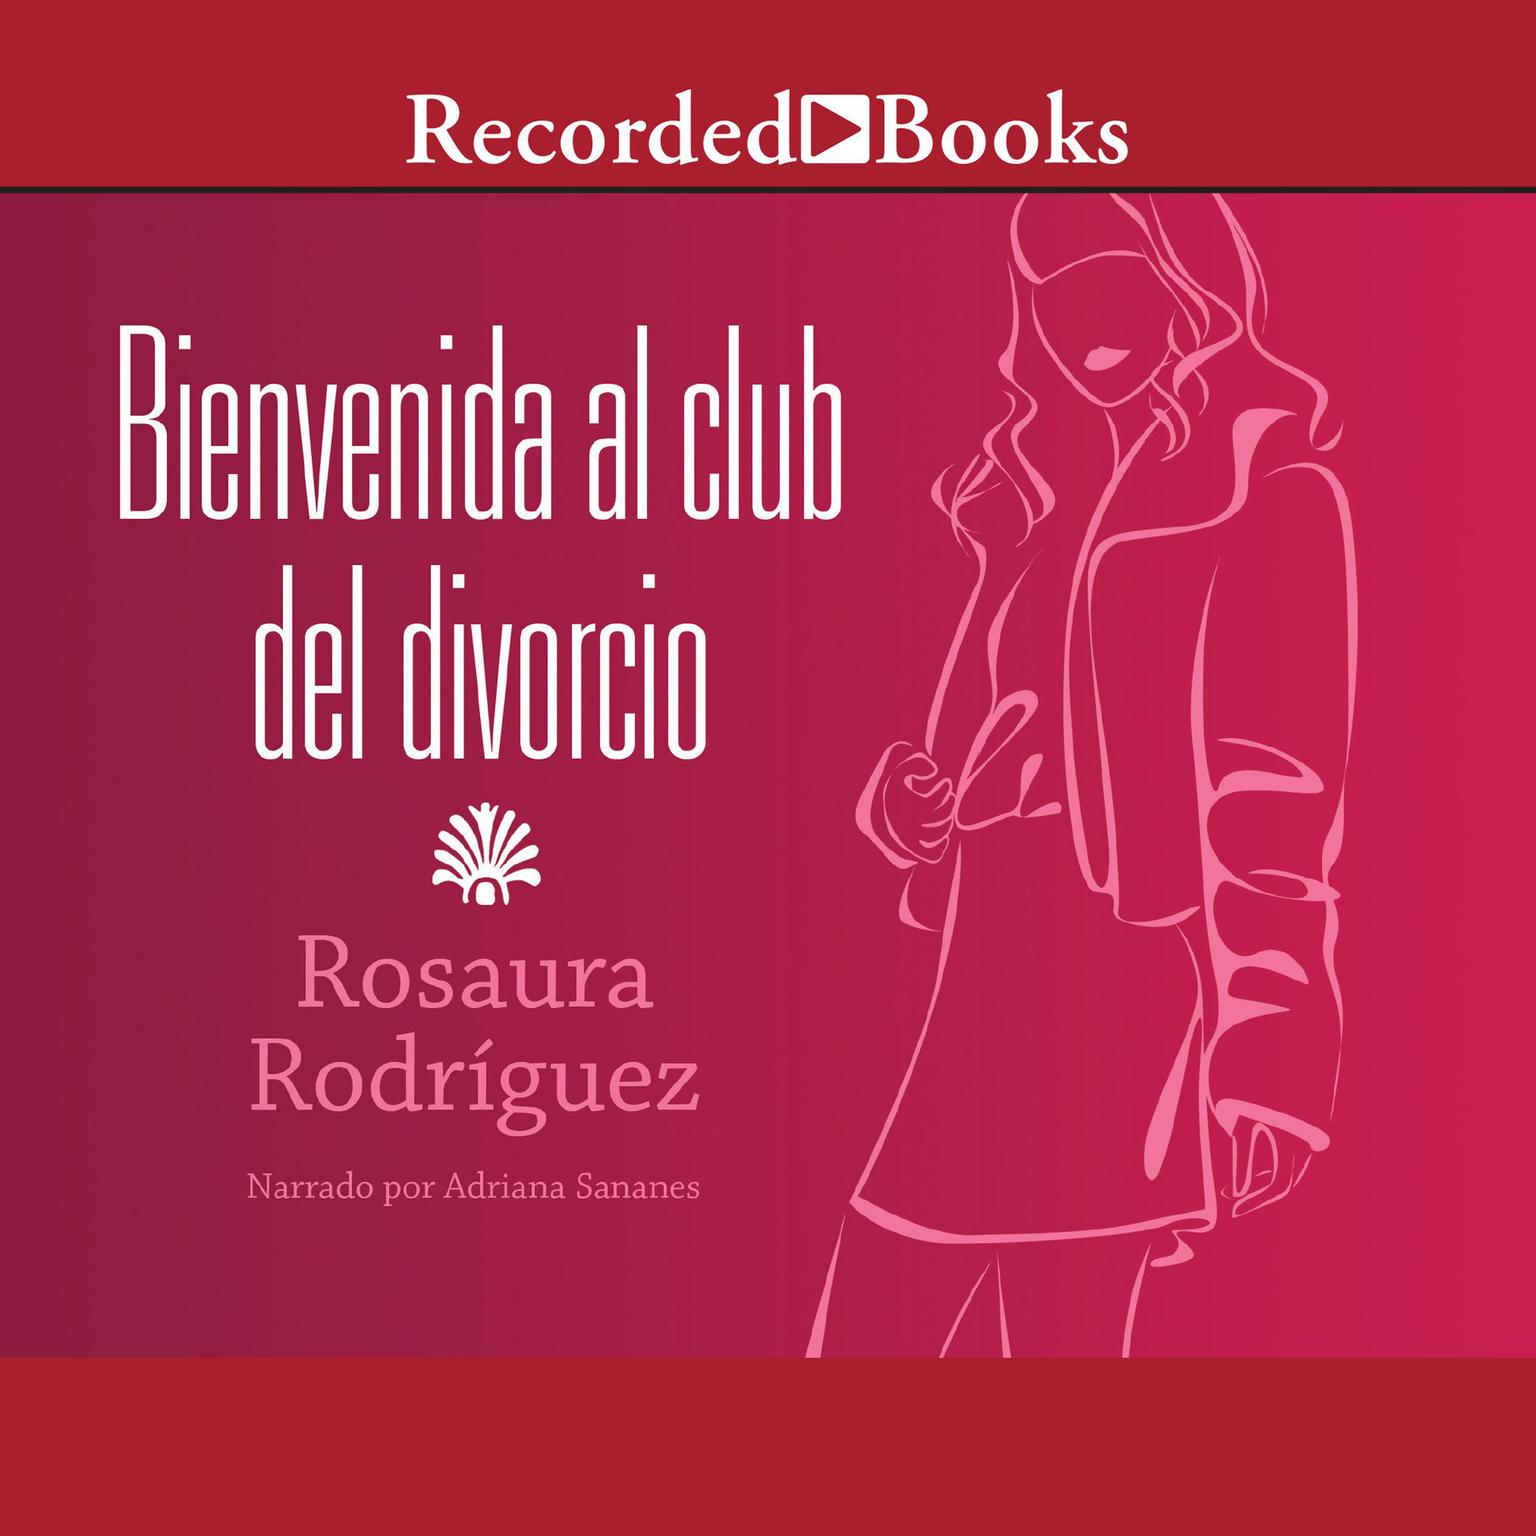 Bienvenida al club del divorcio (Welcome to the Divorce Club) Audiobook, by Rosaura Rodríguez